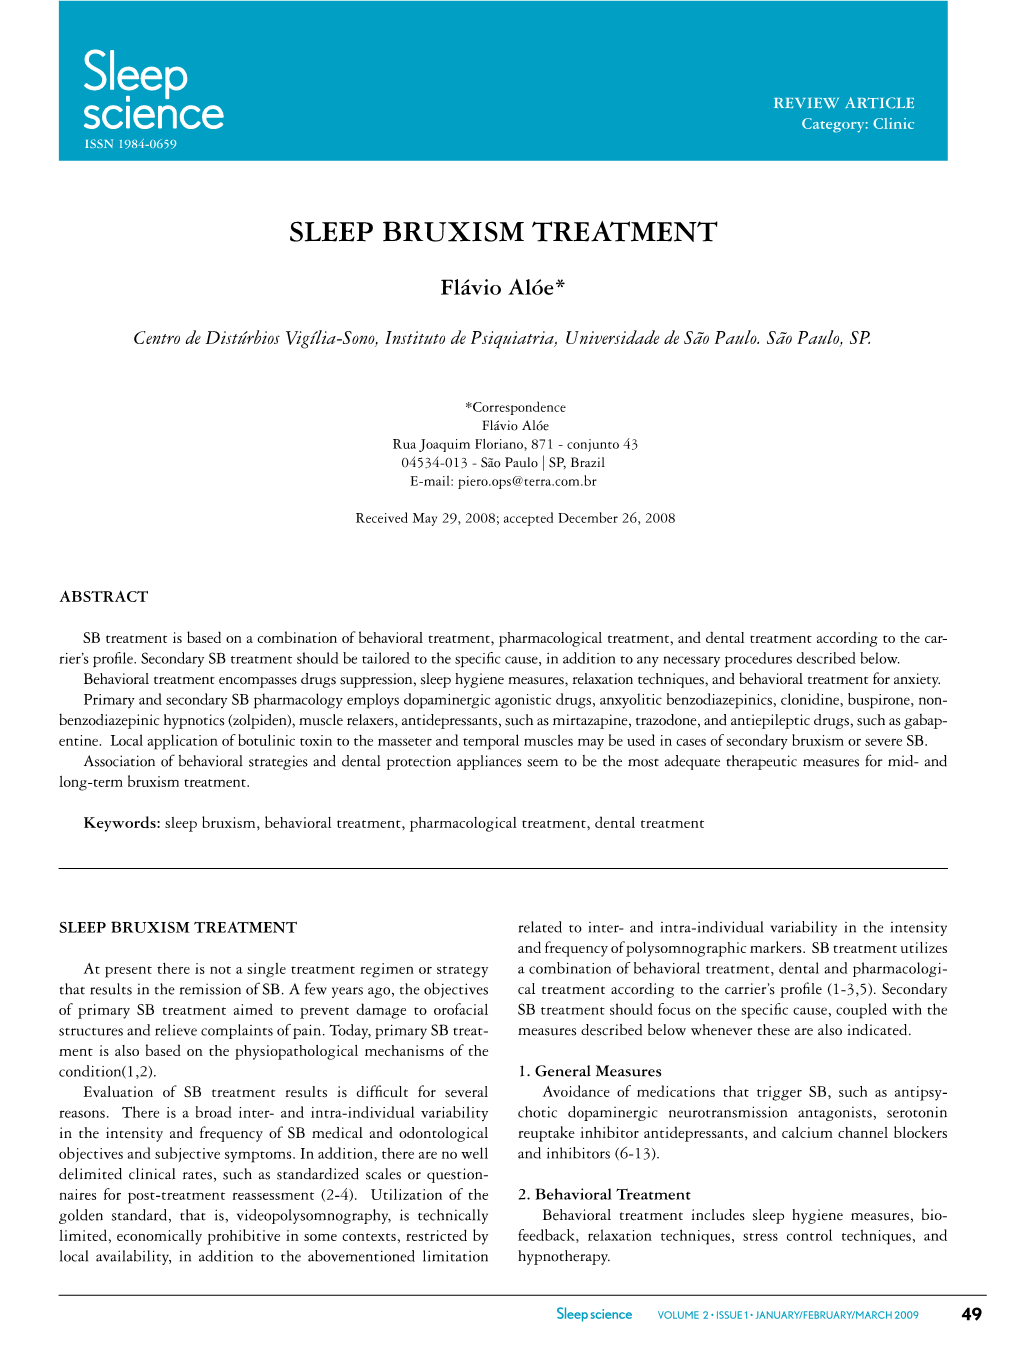 Sleep Bruxism Treatment